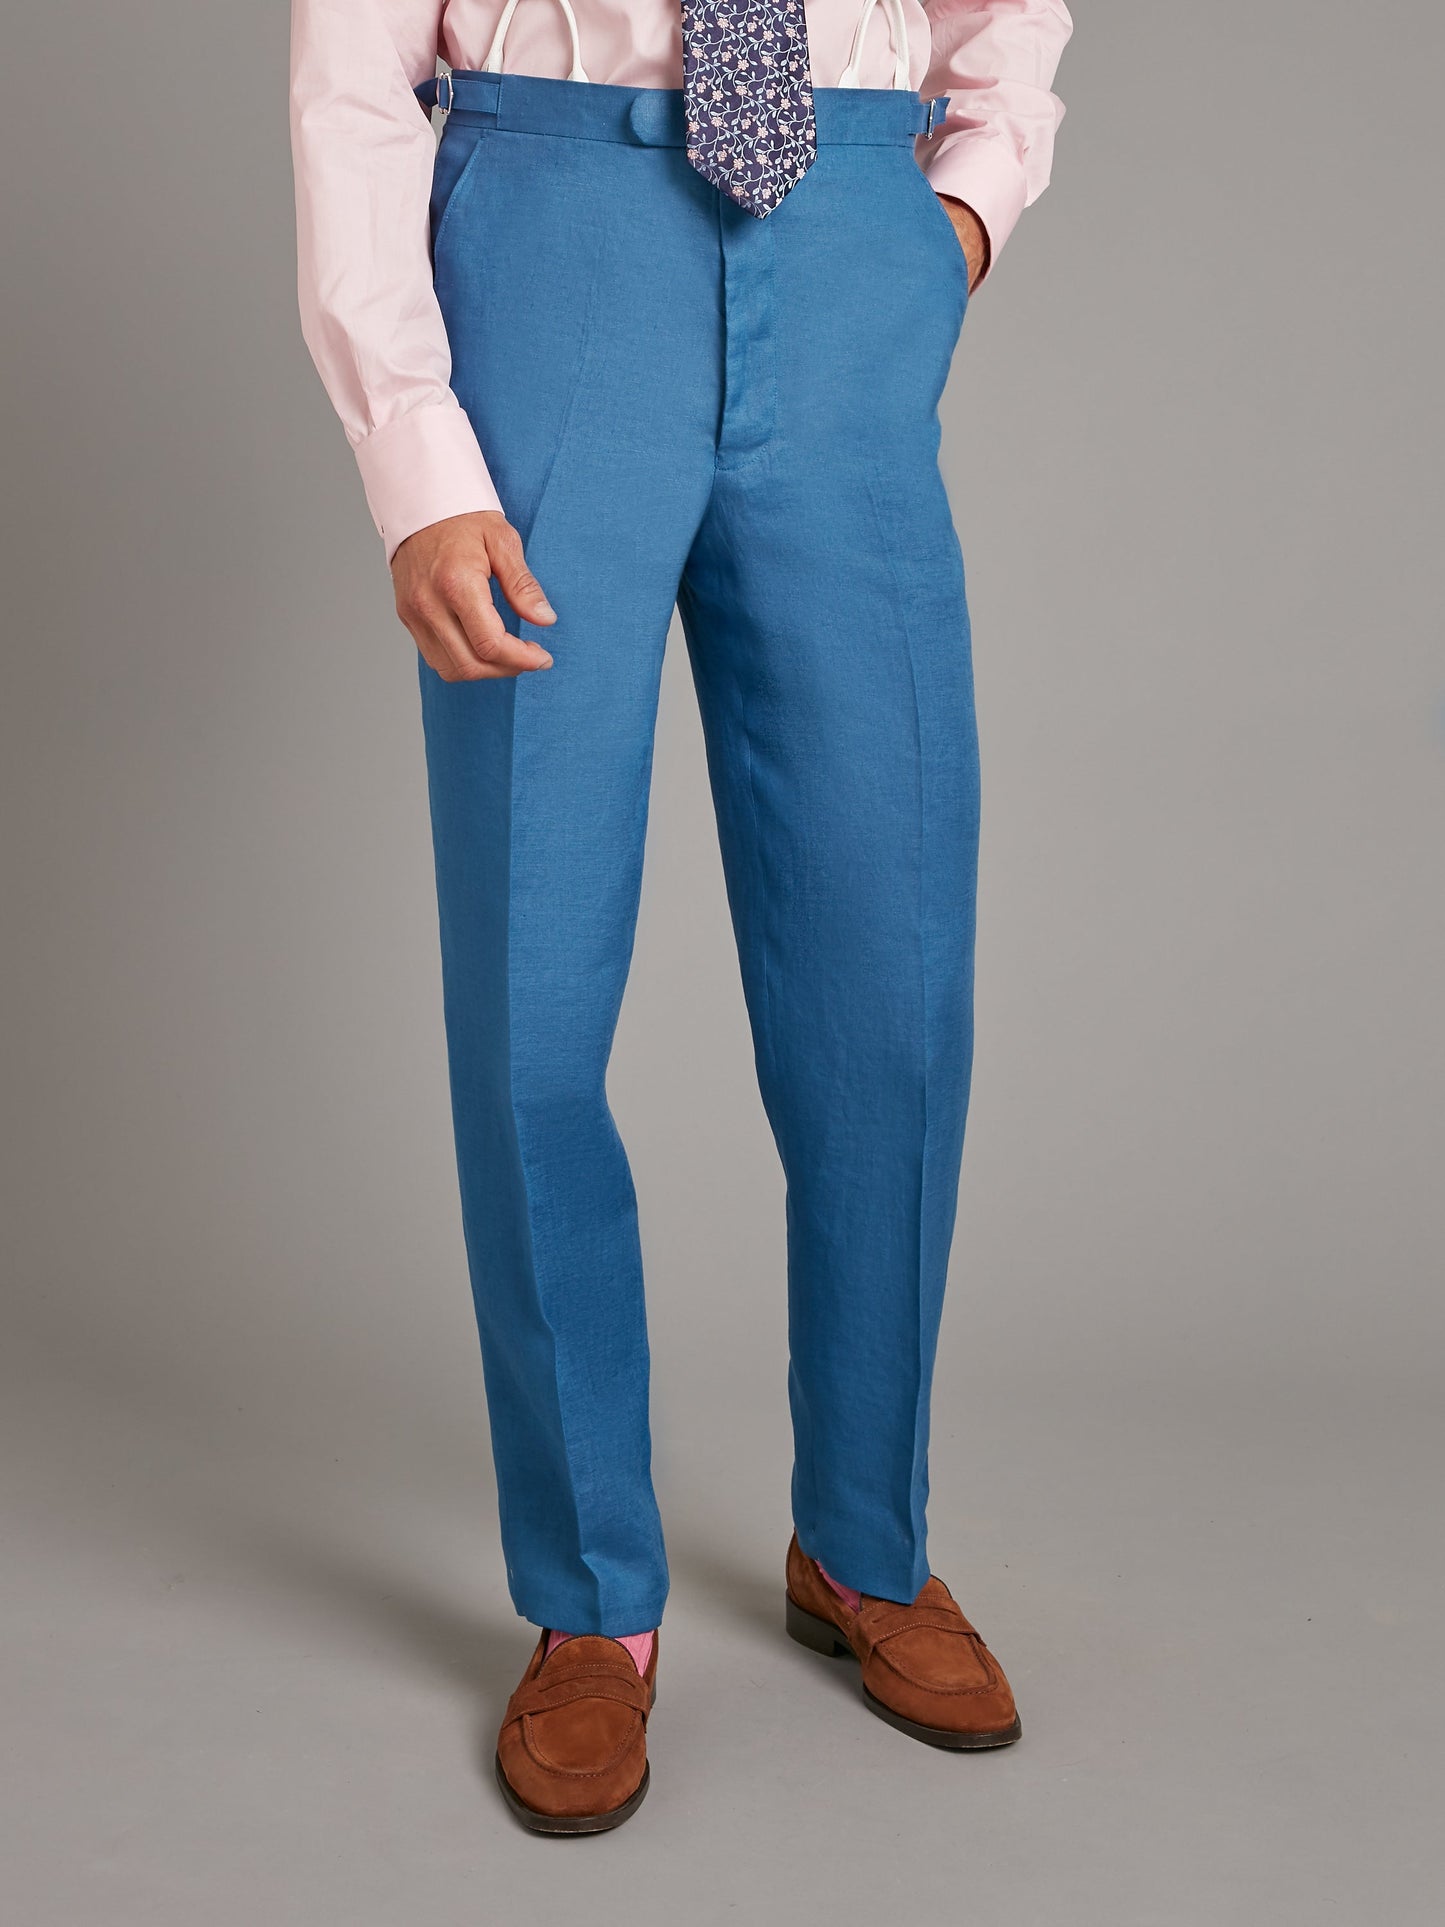 Carlyle Suit - Borage Blue Linen